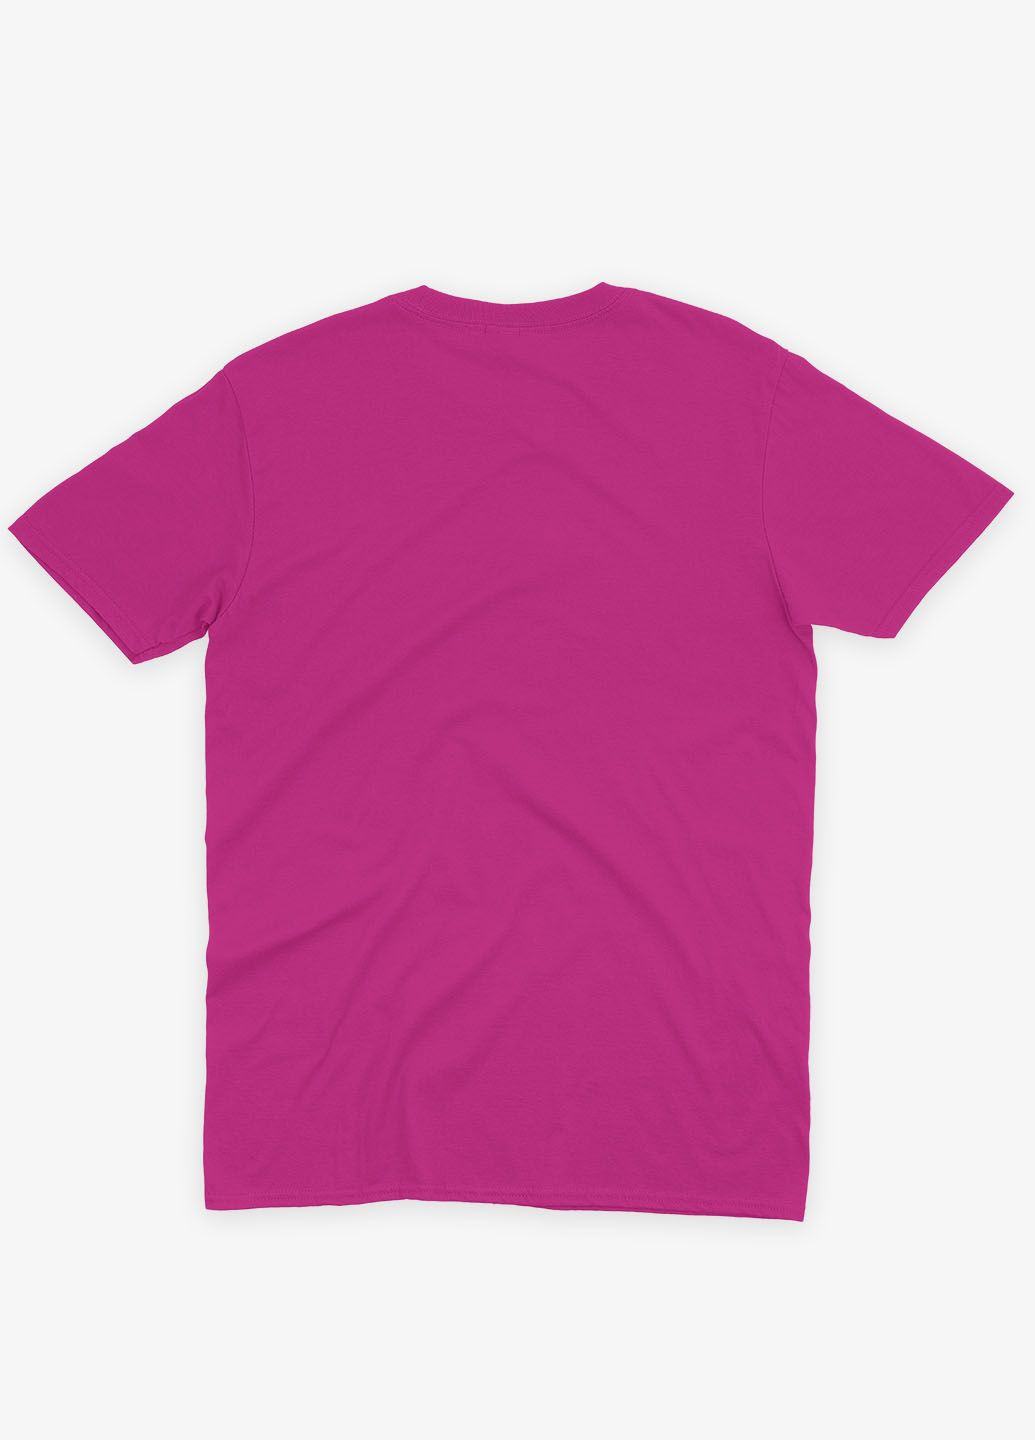 Розовая демисезонная футболка для девочки с принтом супергероя - бэтмен (ts001-1-fuxj-006-003-042-g) Modno